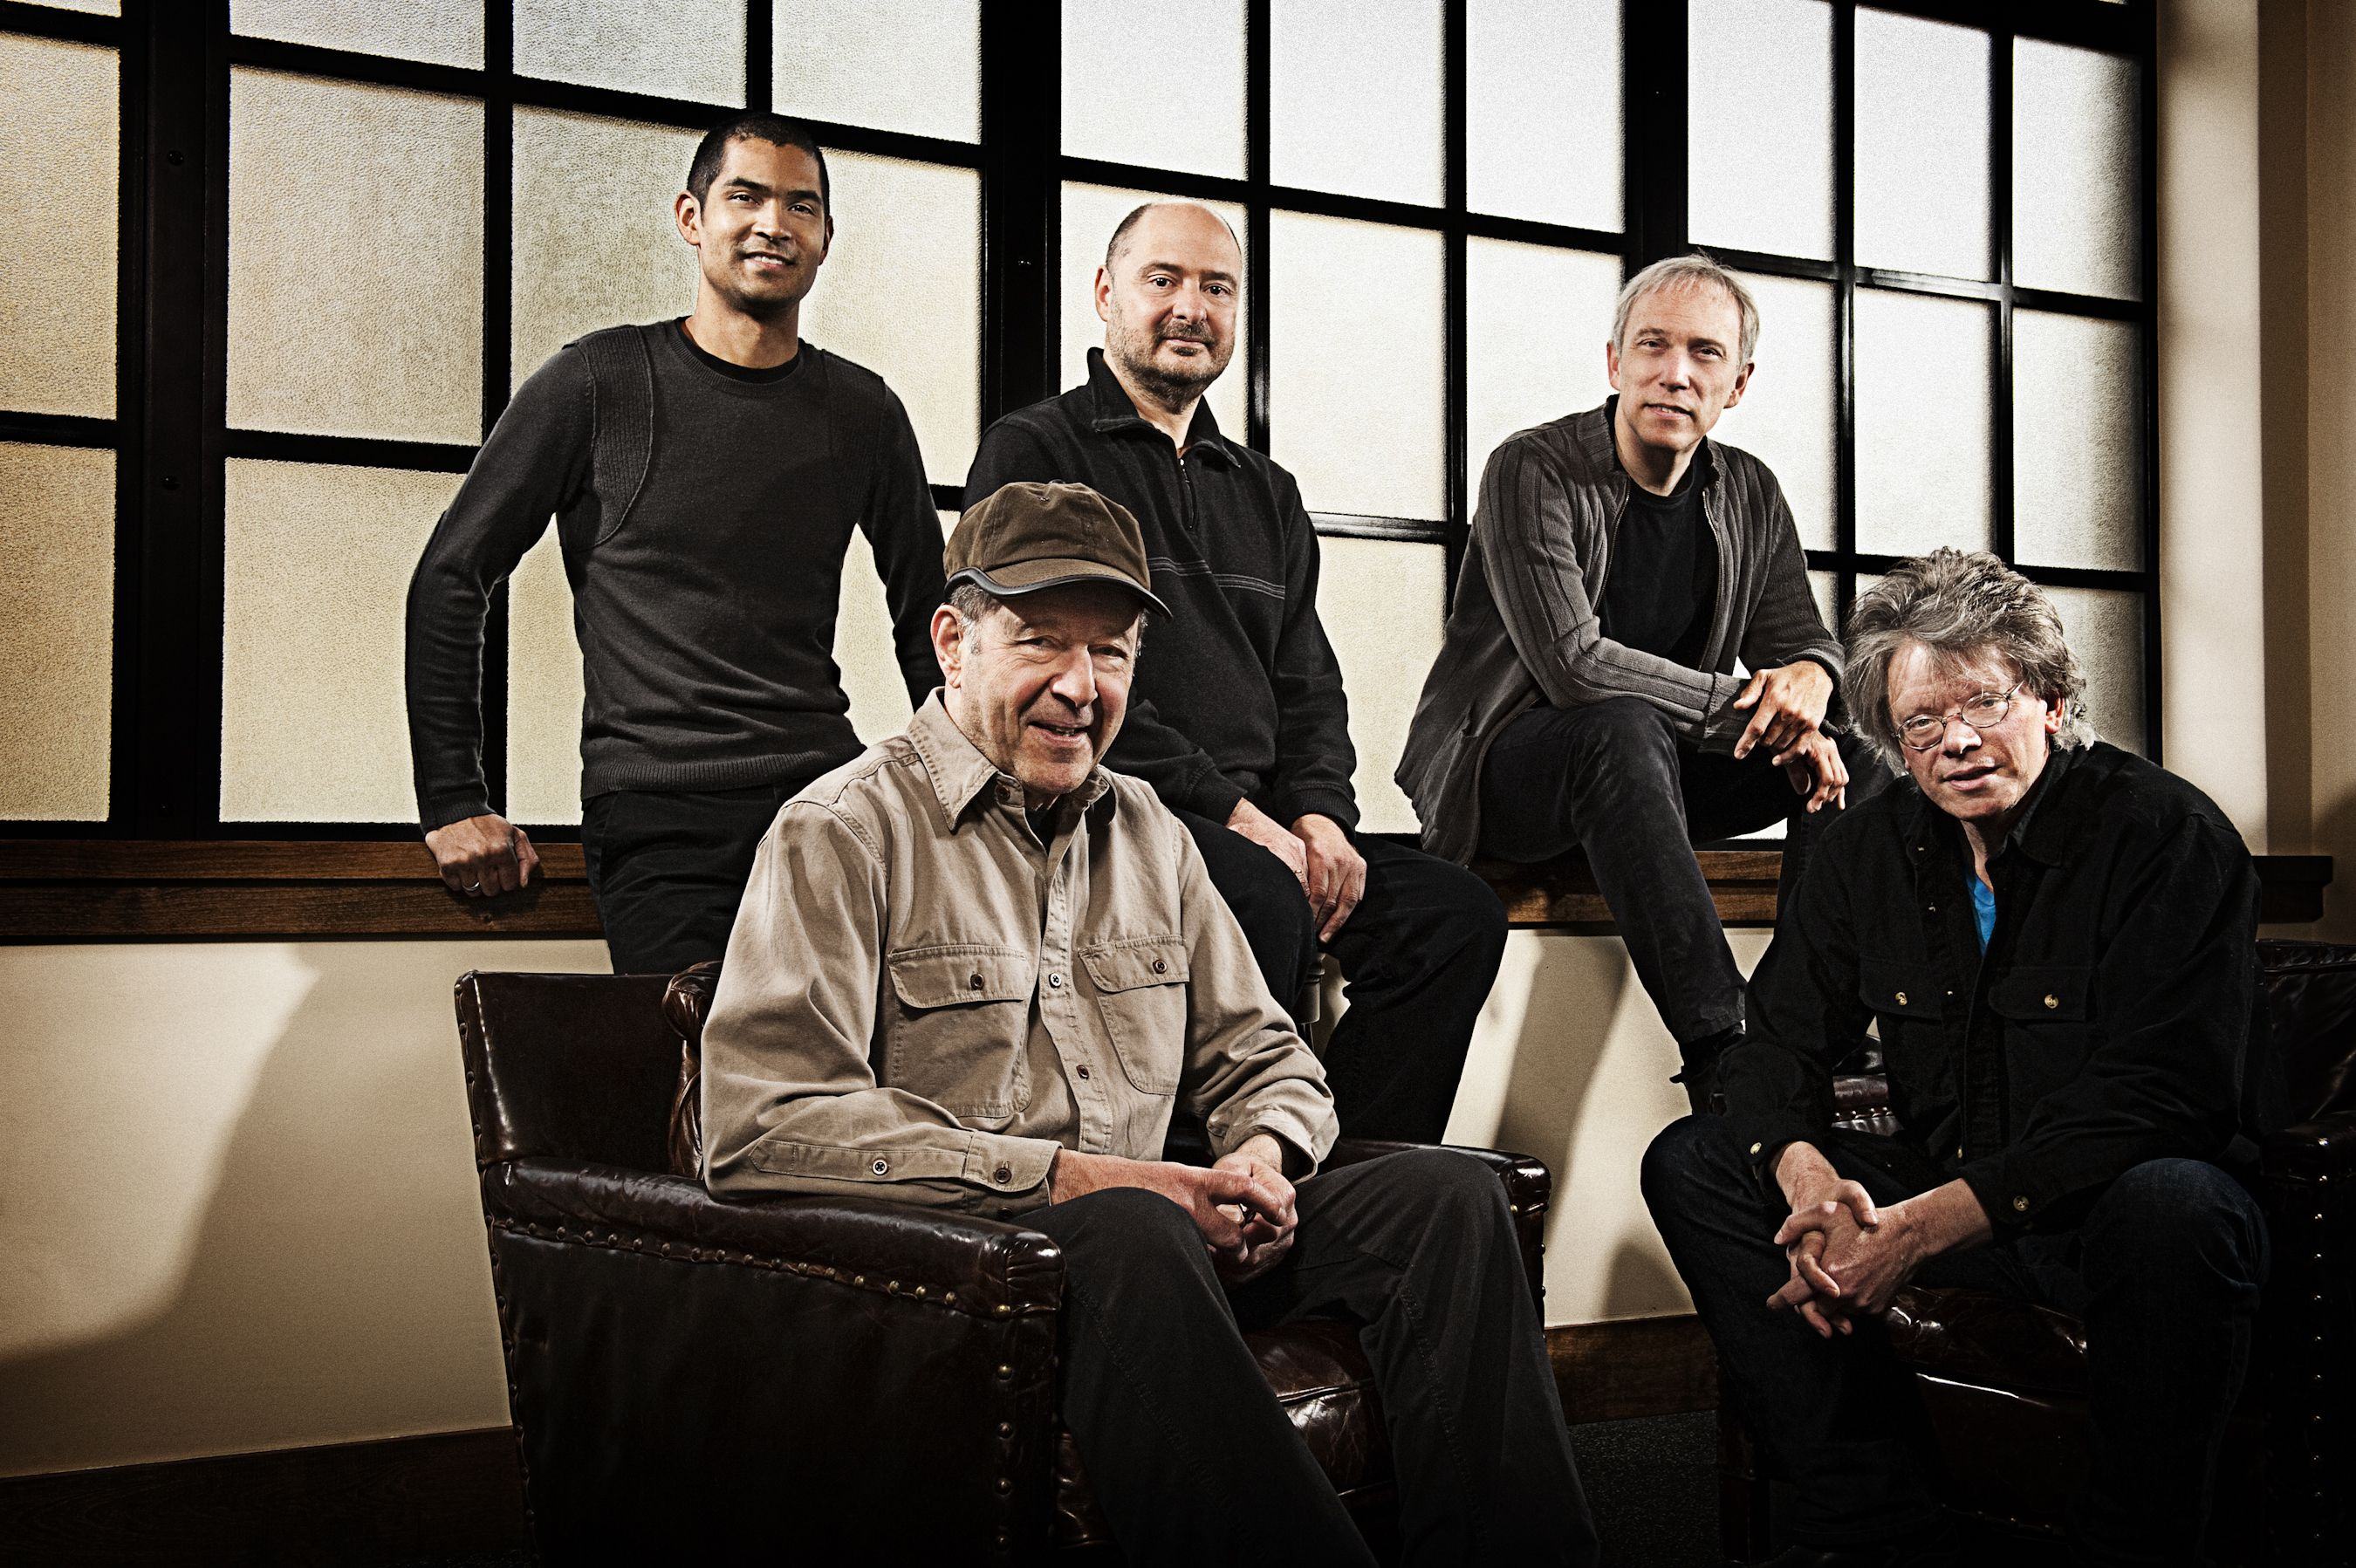 Steve Reich e o quarteto fantástico. [Kronos Quartet photographed at San Francisco, CA February 23, 2011©Jay Blakesberg]